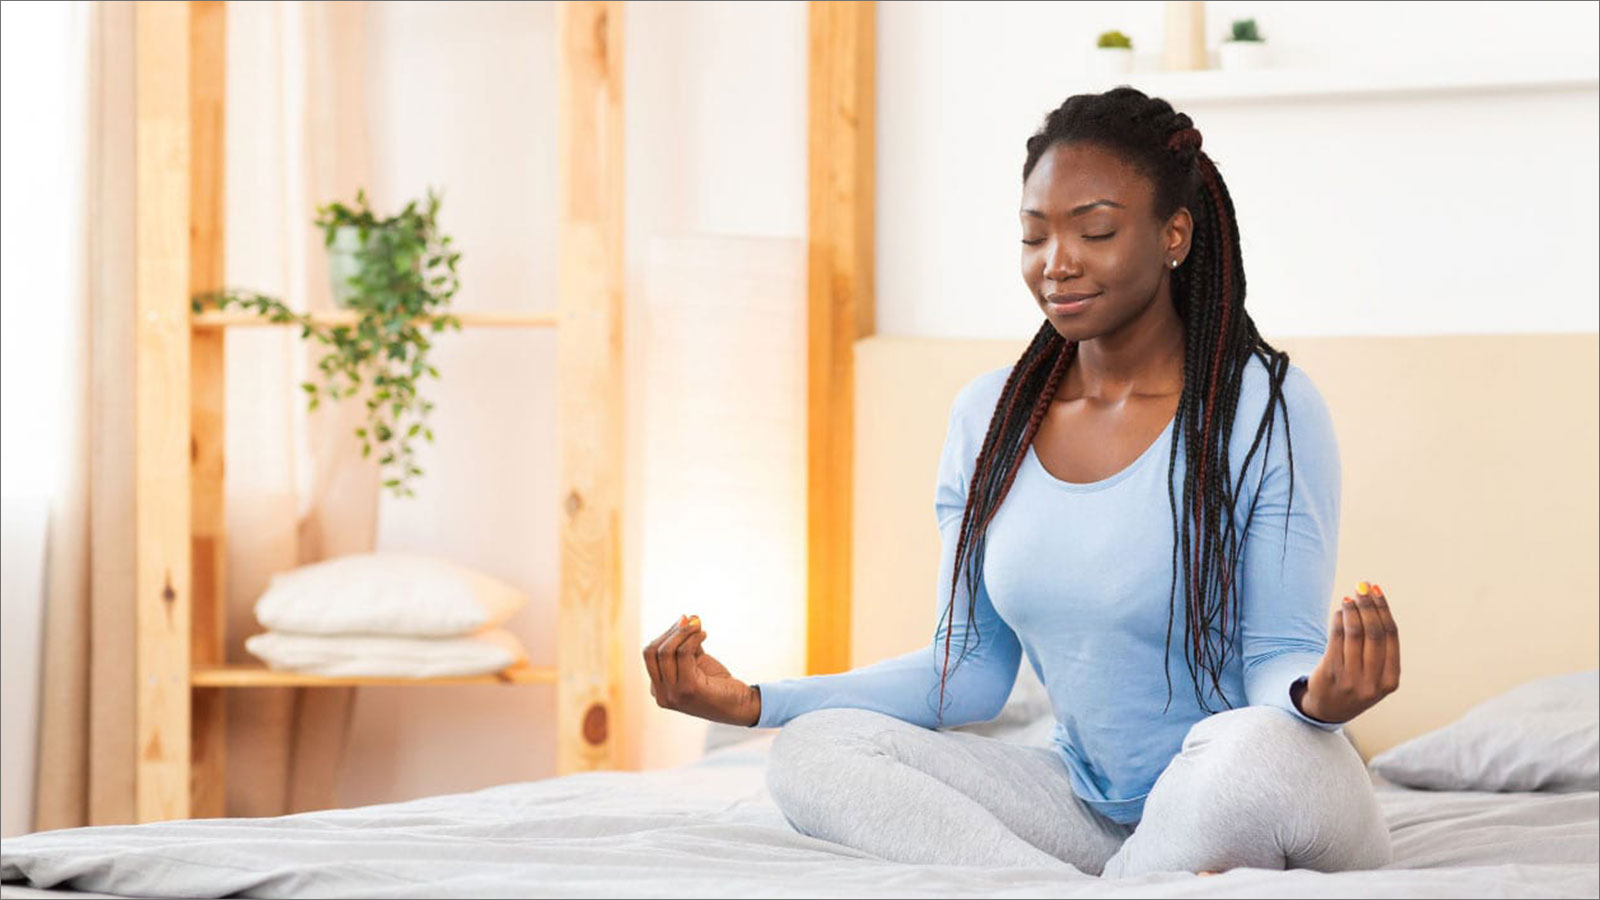 كيفية ممارسة اليوغا للحصول على شعور بالاسترخاء والهدوء؟ - الفوائد الصحية لممارسة اليوغا